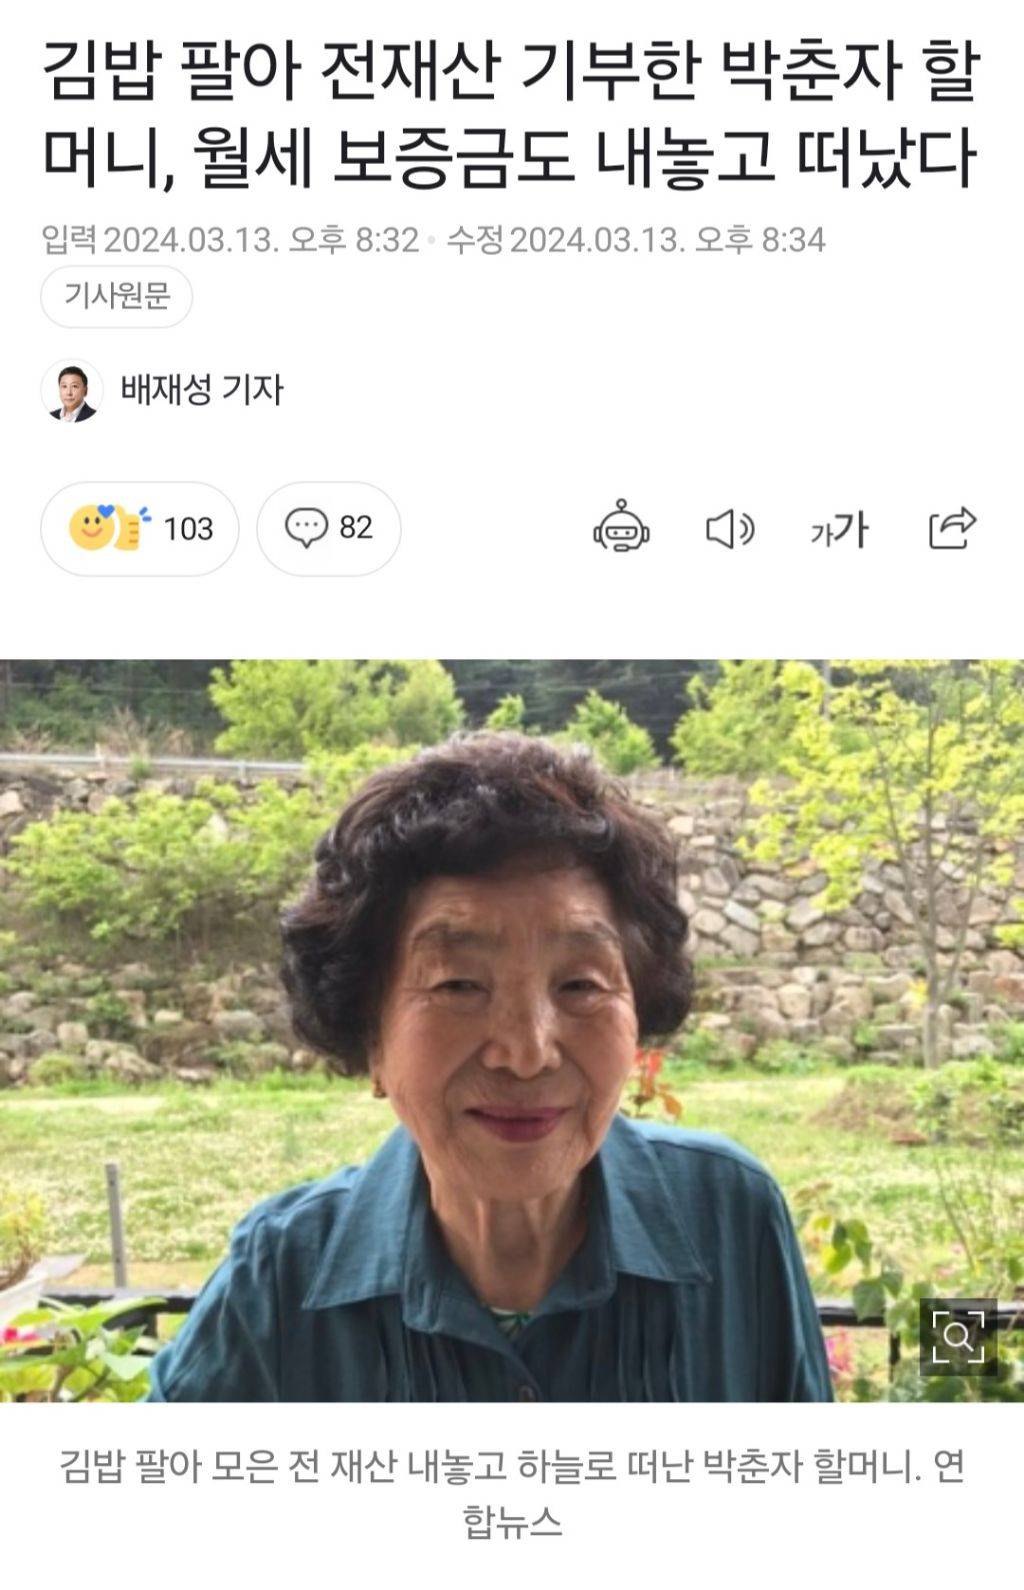 김밥 팔아 전재산 기부한 박춘자 할머니, 월세 보증금도 내놓고 떠났다 | 인스티즈